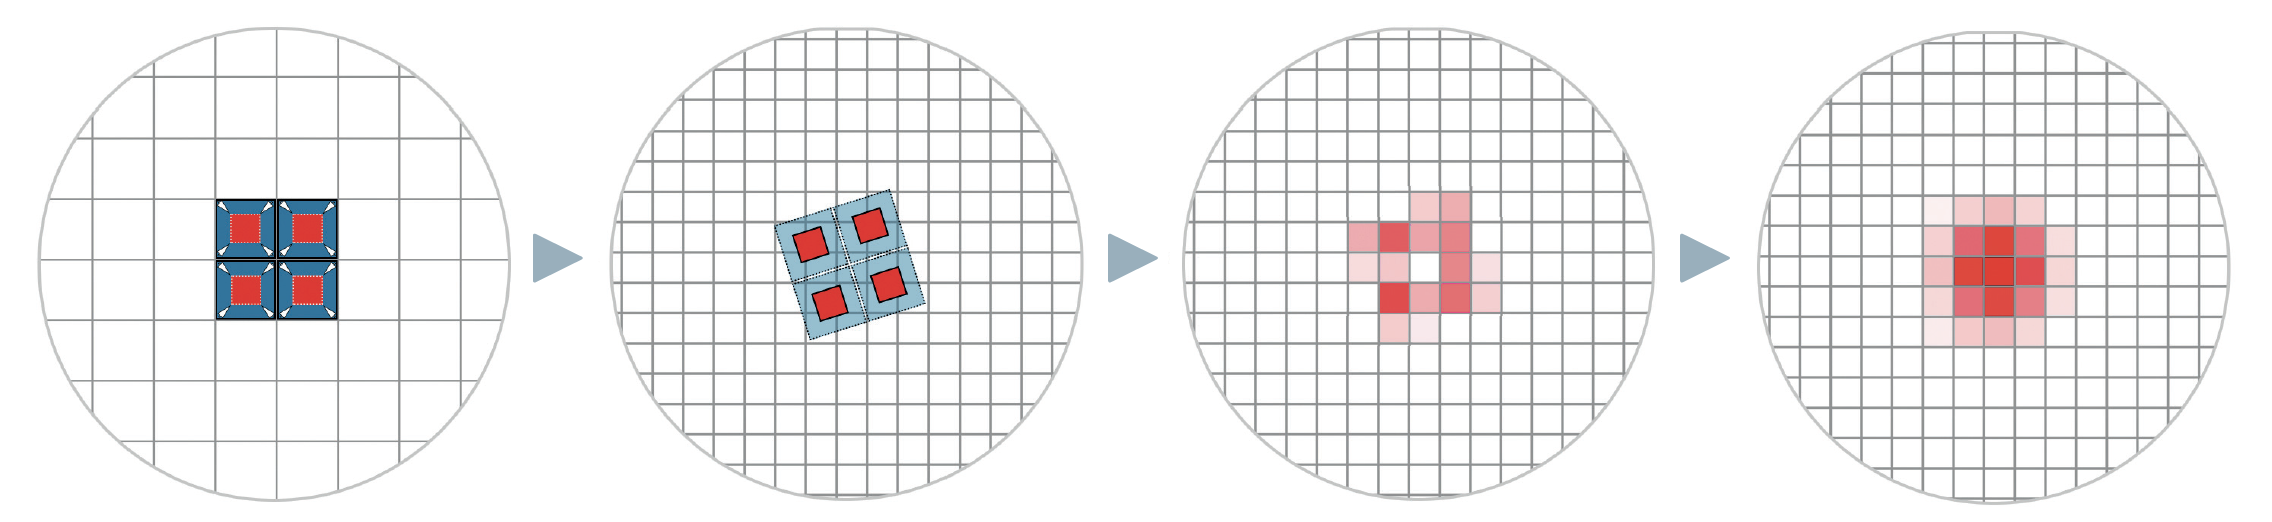 Zum Funktionsprinzip der Drizzle-Technik: Im linken Bild ist ein Stern genau auf der Kreuzung vierer Pixel gelandet und seine Helligkeitswerte
verteilen sich gleichmäßig auf die Pixel. Der Stern wirkt dadurch pixelig und sein eigentliches Profil ist nicht wiedergegeben. Das Original-Pixelraster
der Aufnahme (blau) wird nun verkleinert (rot) und auf ein neues Raster (zweites Bild) projiziert. Das neue Raster ist hier um den Faktor 2 feiner.
Bei nur einem Bild entstehen natürlich mancherorts Lücken, wie in der resultierenden Werteverteilung im dritten Bild zu sehen ist. Deswegen sind
viele Bilder mit geringem und variierendem Versatz nötig. Nach deren Mittelung wird das Sternprofil nun im Idealfall besser dargestellt (rechtes Bild). M. Weigand